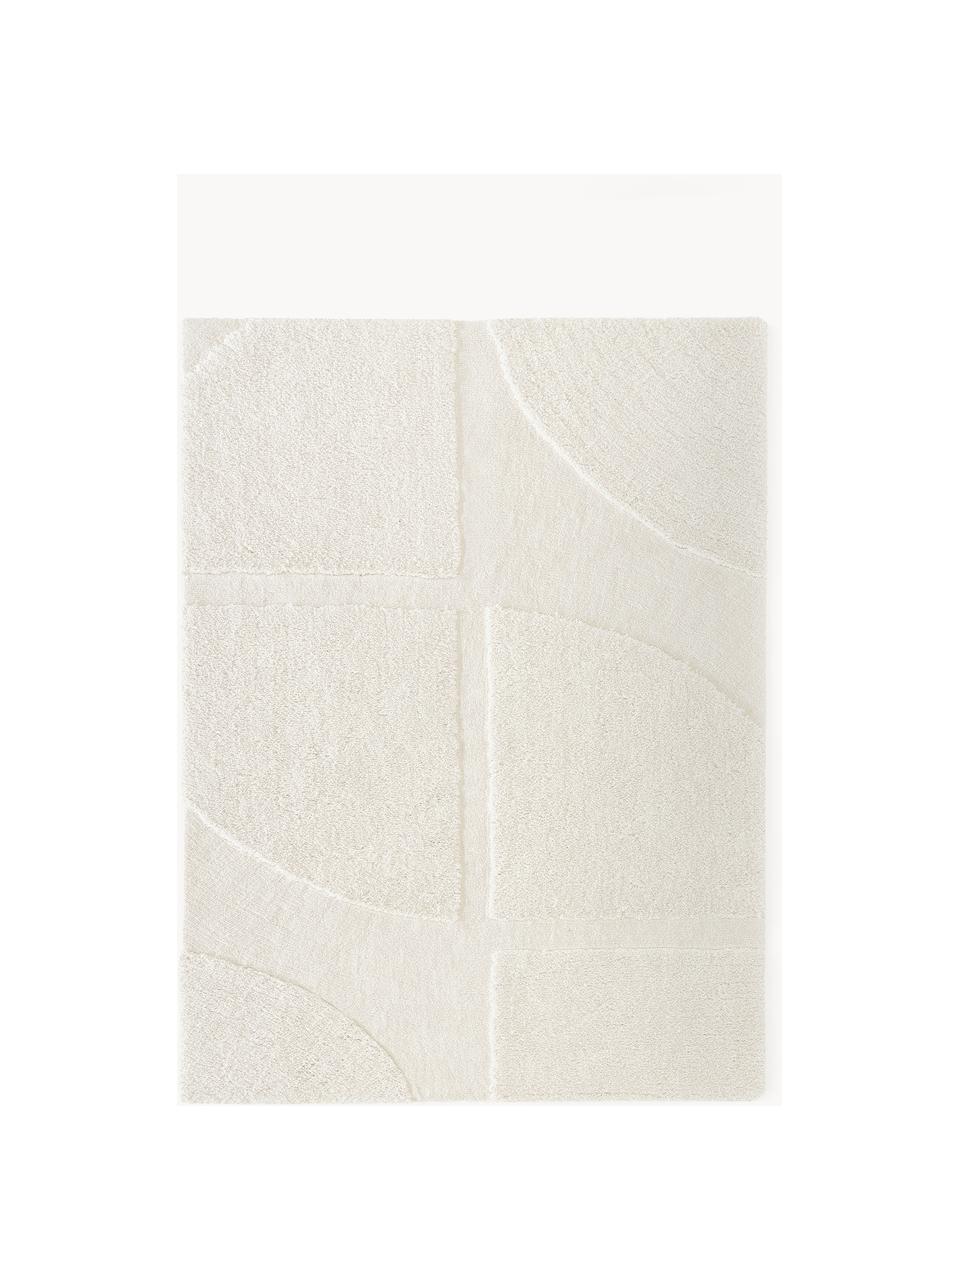 Tappeto soffice a pelo lungo con motivo in rilievo Jade, Retro: 55% poliestere, 45% coton, Bianco crema, Larg. 120 x Lung. 180 cm (taglia S)